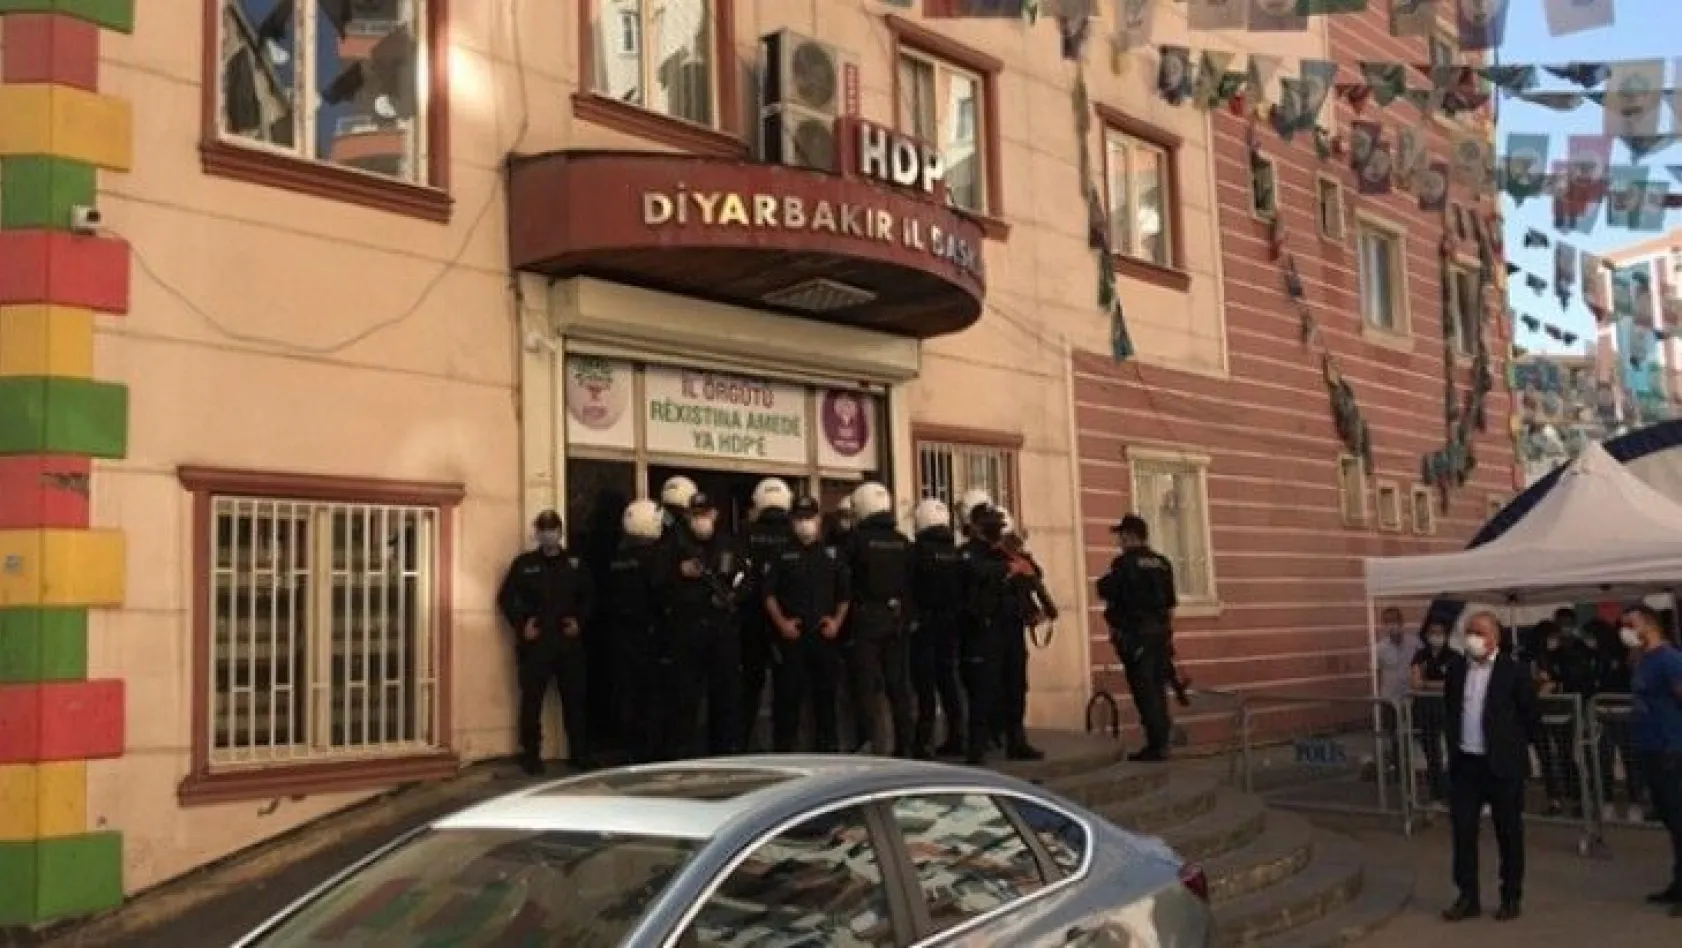 Diyarbakır'da HDP binalarında arama: 2 gözaltı